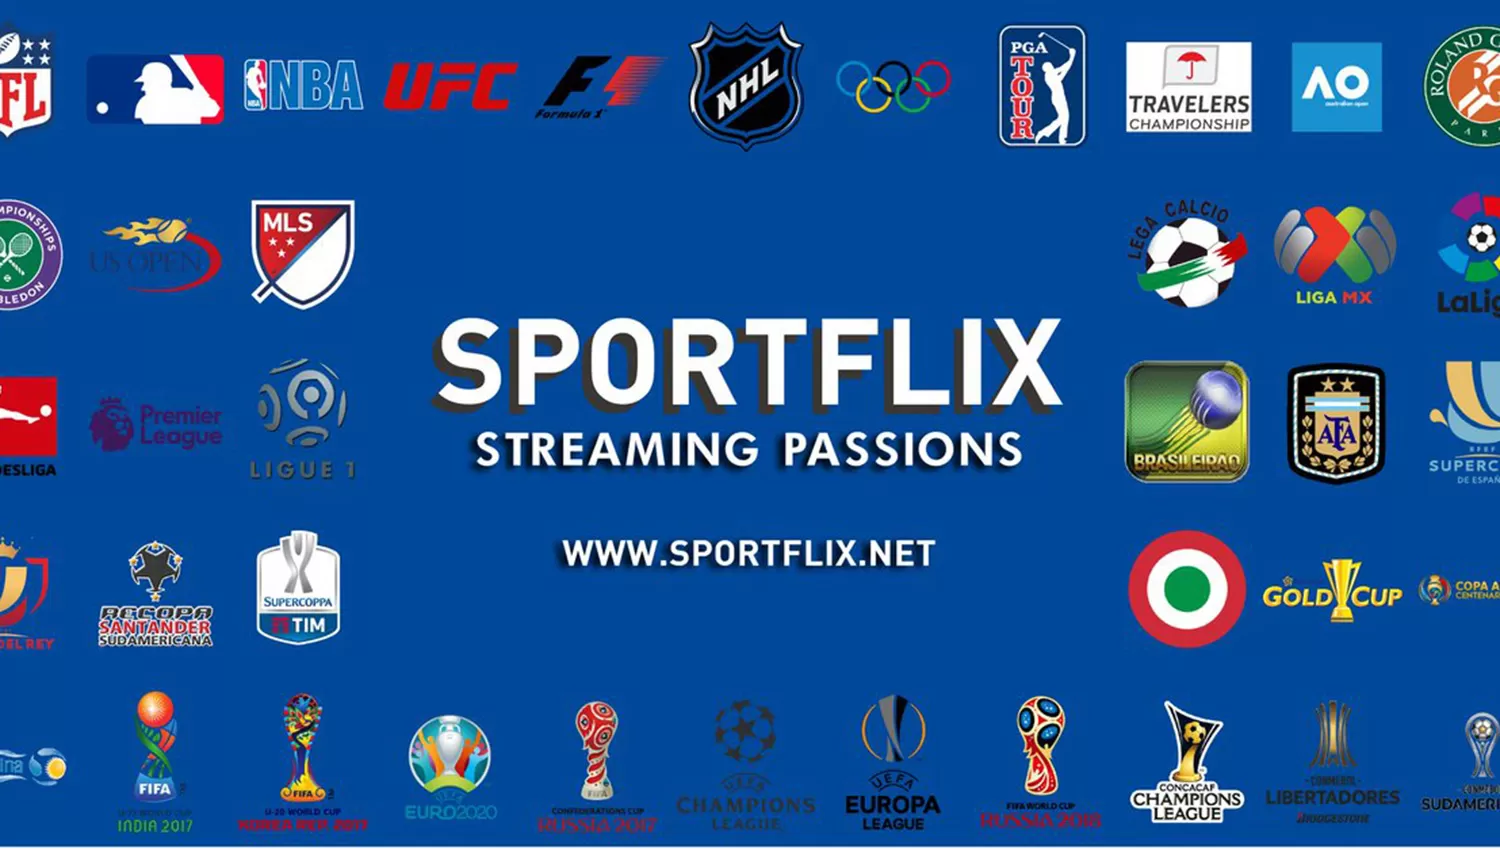 Sportflix anuncia la televisación de la Superliga y enfurece a Fox Sports y Turner